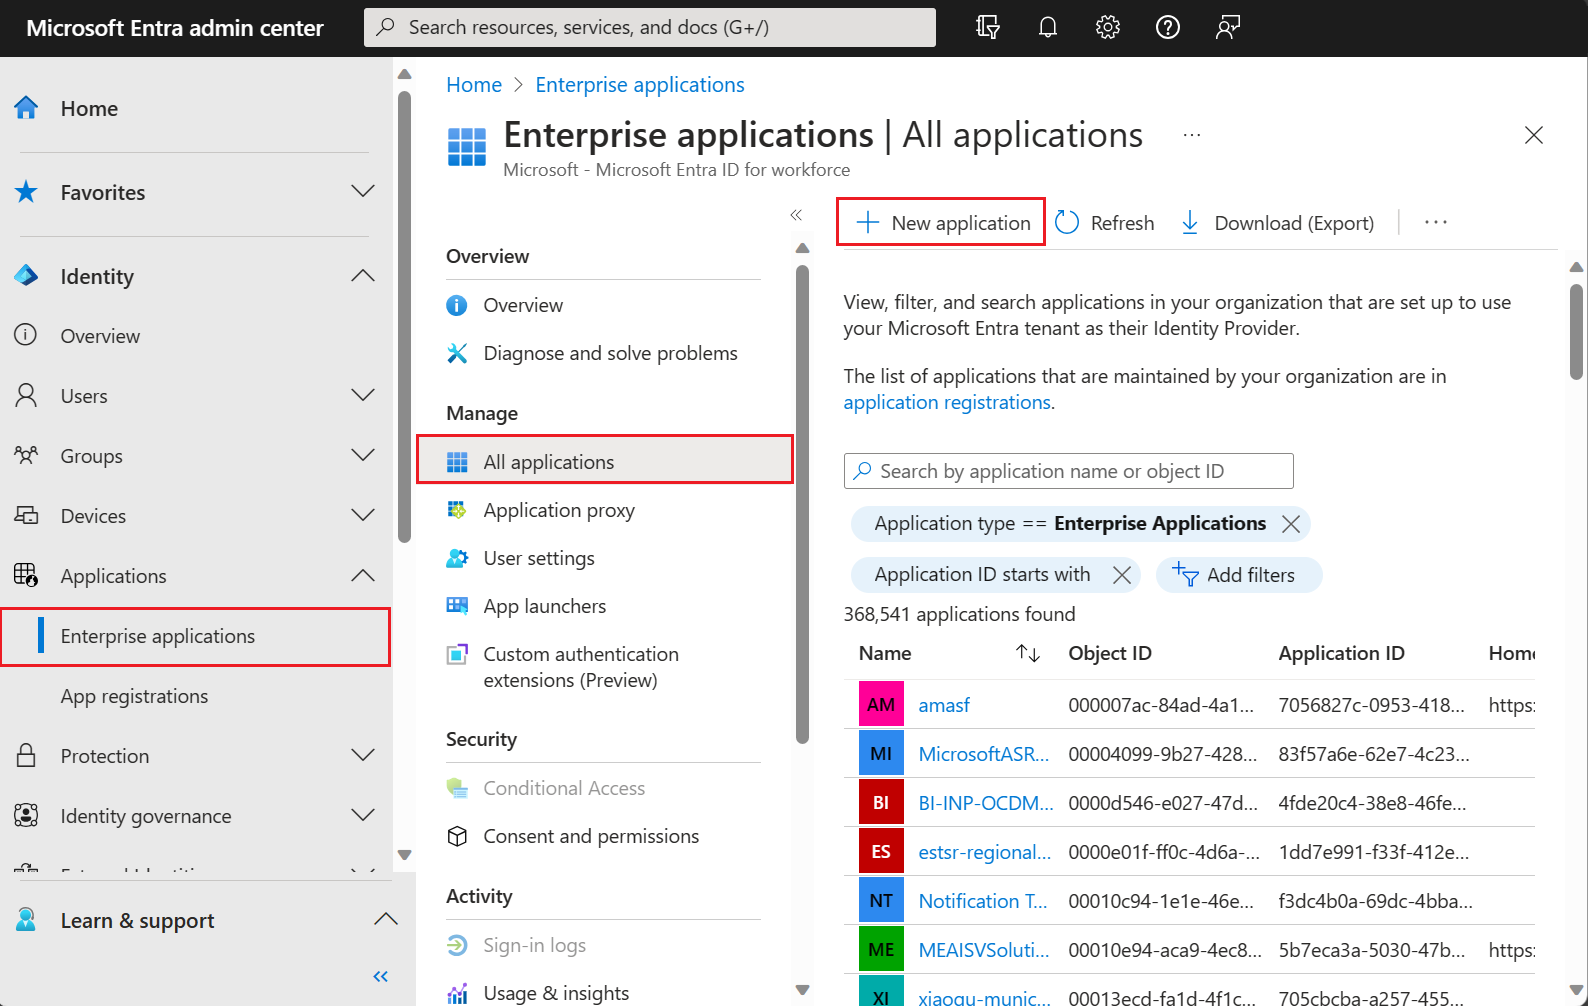 Captura de ecrã a mostrar o painel da galeria de aplicações do Microsoft Entra no [Centro de administração do Microsoft Entra](https://entra.microsoft.com).